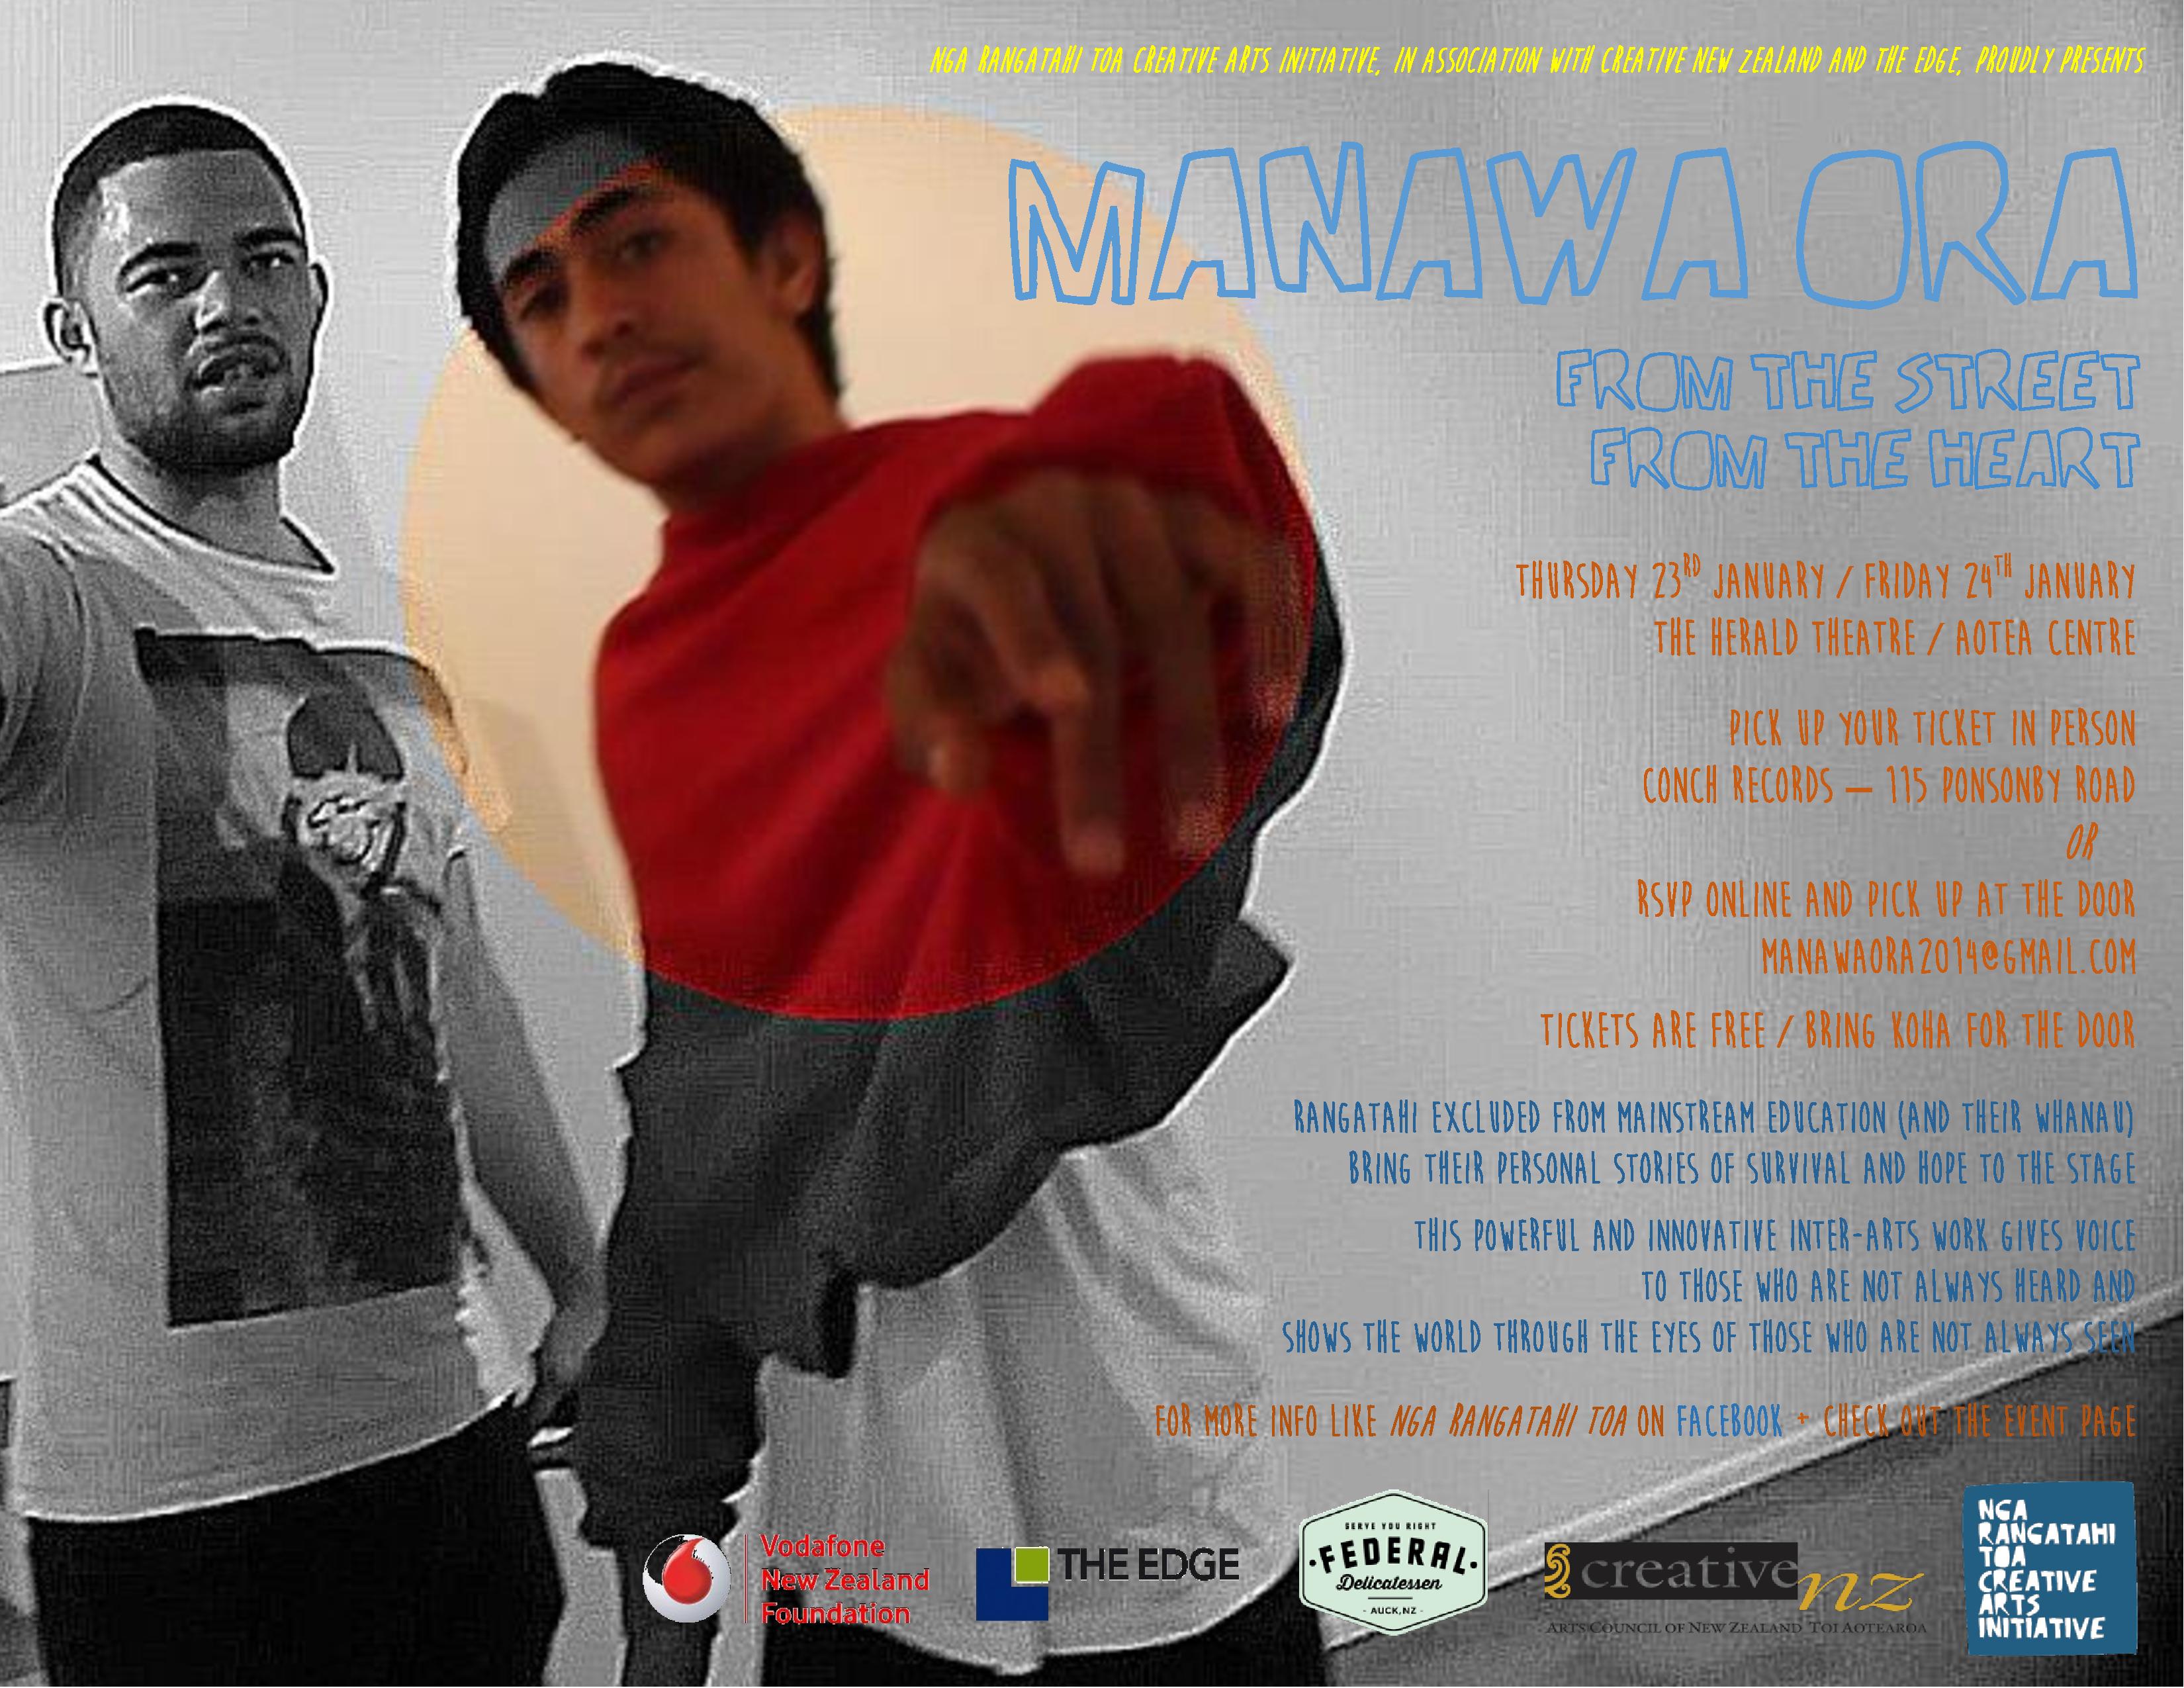 Poster promoting Manawa Ora